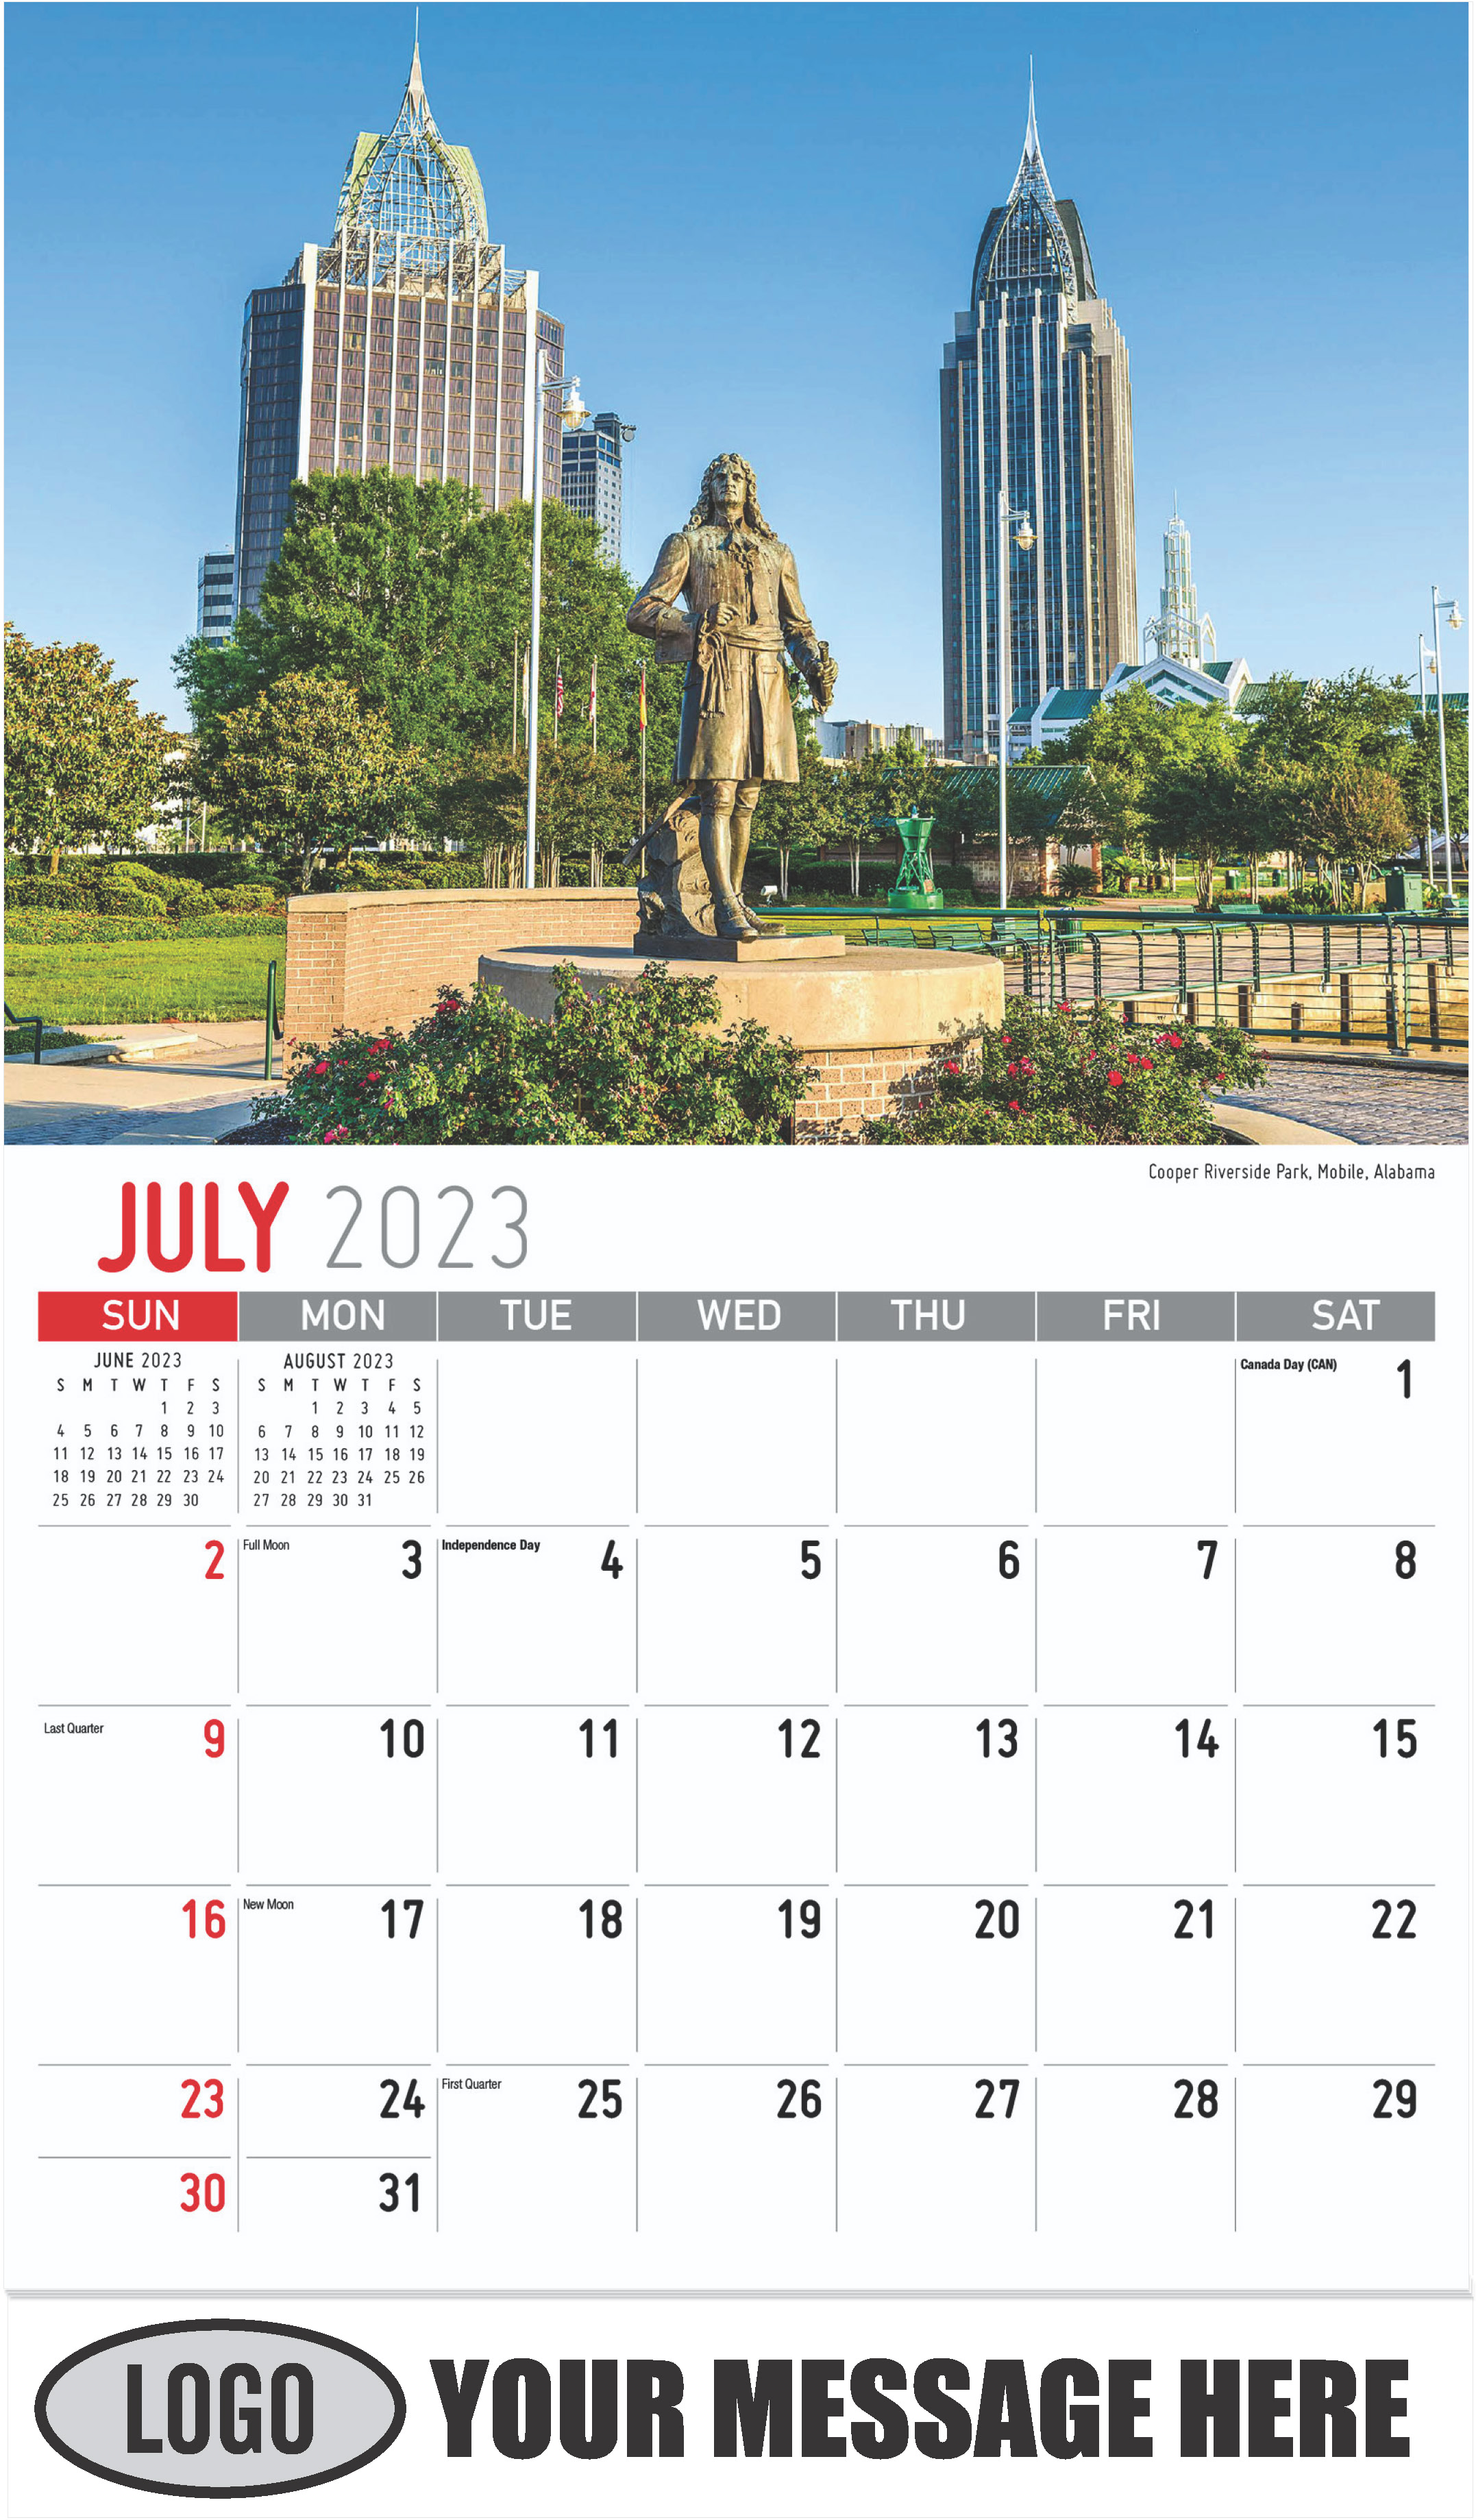 Cooper Riverside Park, Mobile, Alabama - July - Scenes of Southeast USA 2023 Promotional Calendar